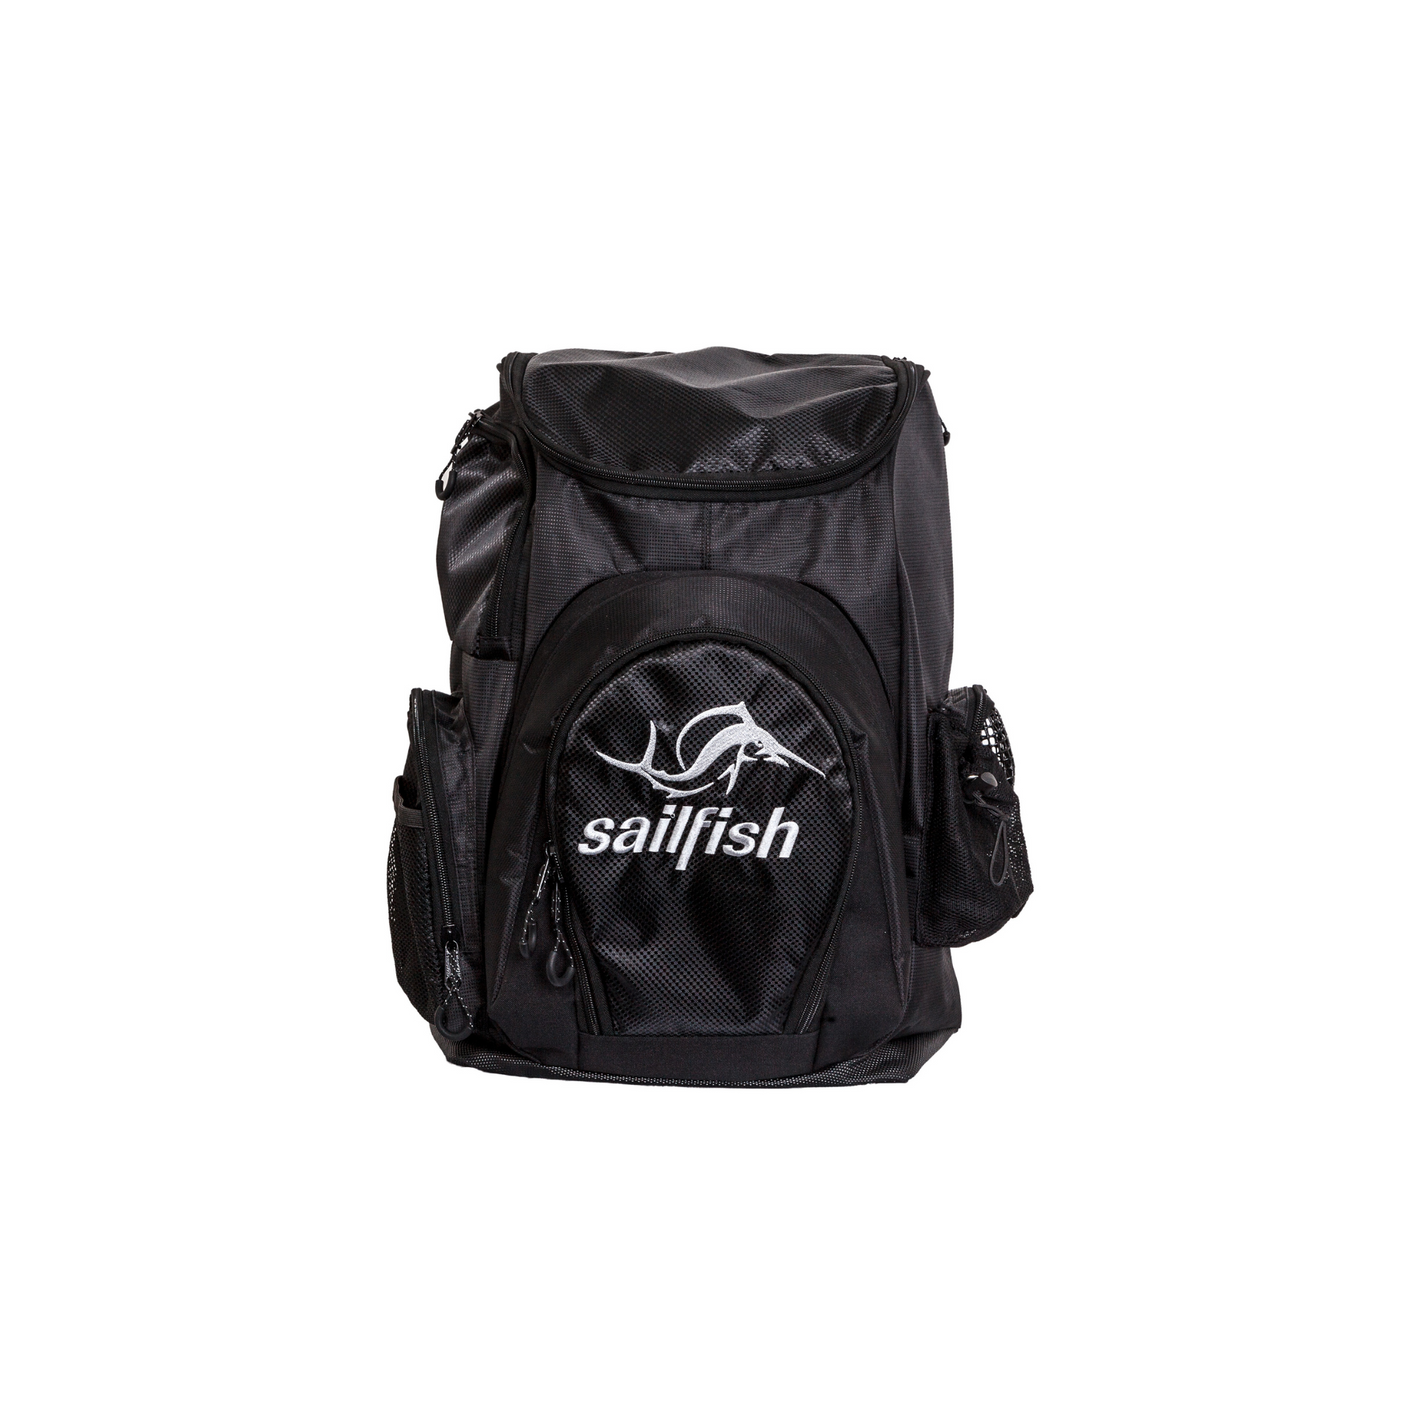 Triathlon backpack sailfish ✓ - sailfish GmbH